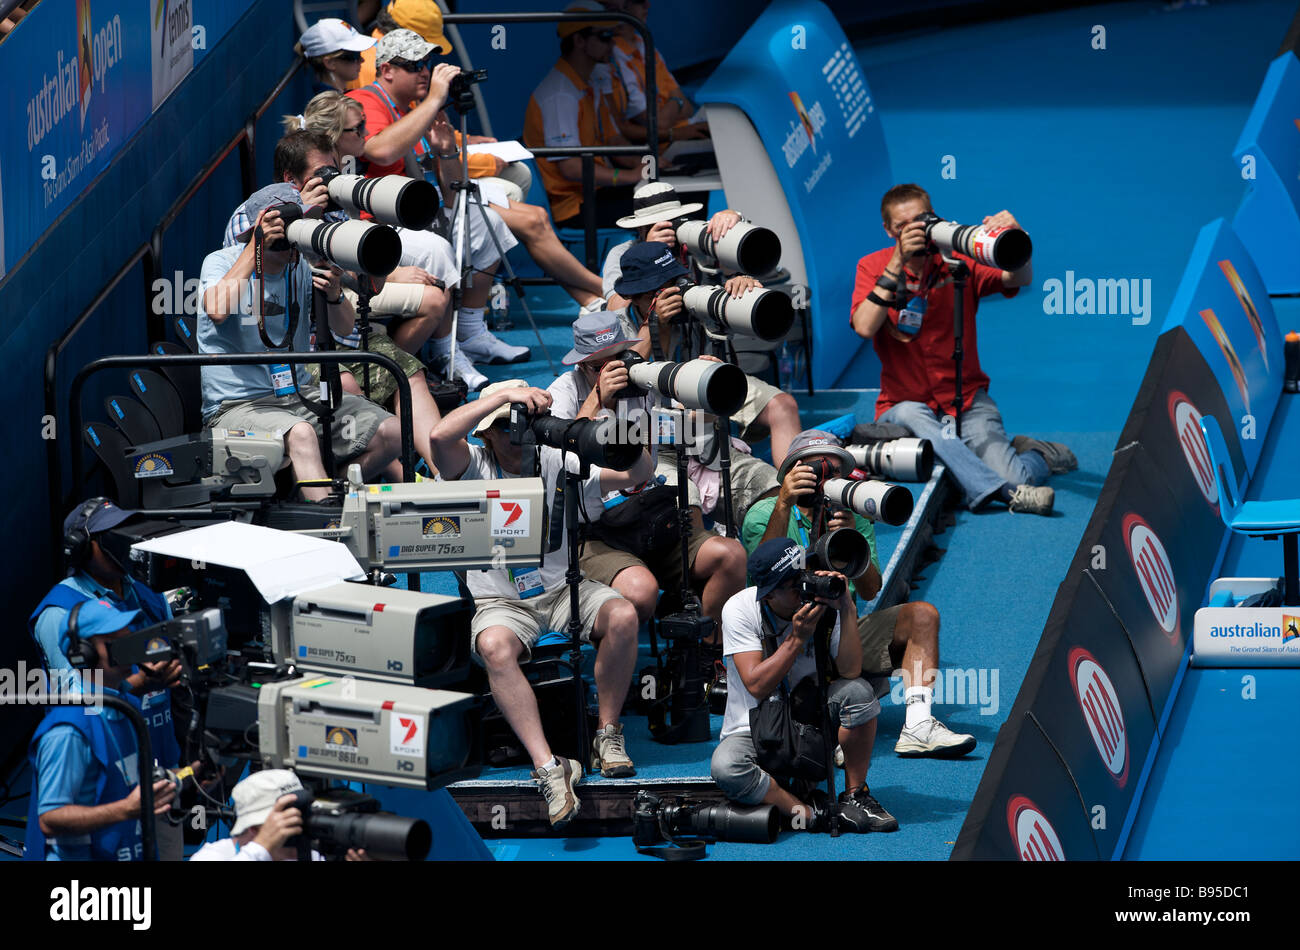 Los fotógrafos profesionales que trabajan con equipos Nikon y Canon durante el Abierto de Australia 2009 Grand Slam en Melbourne. Foto de stock